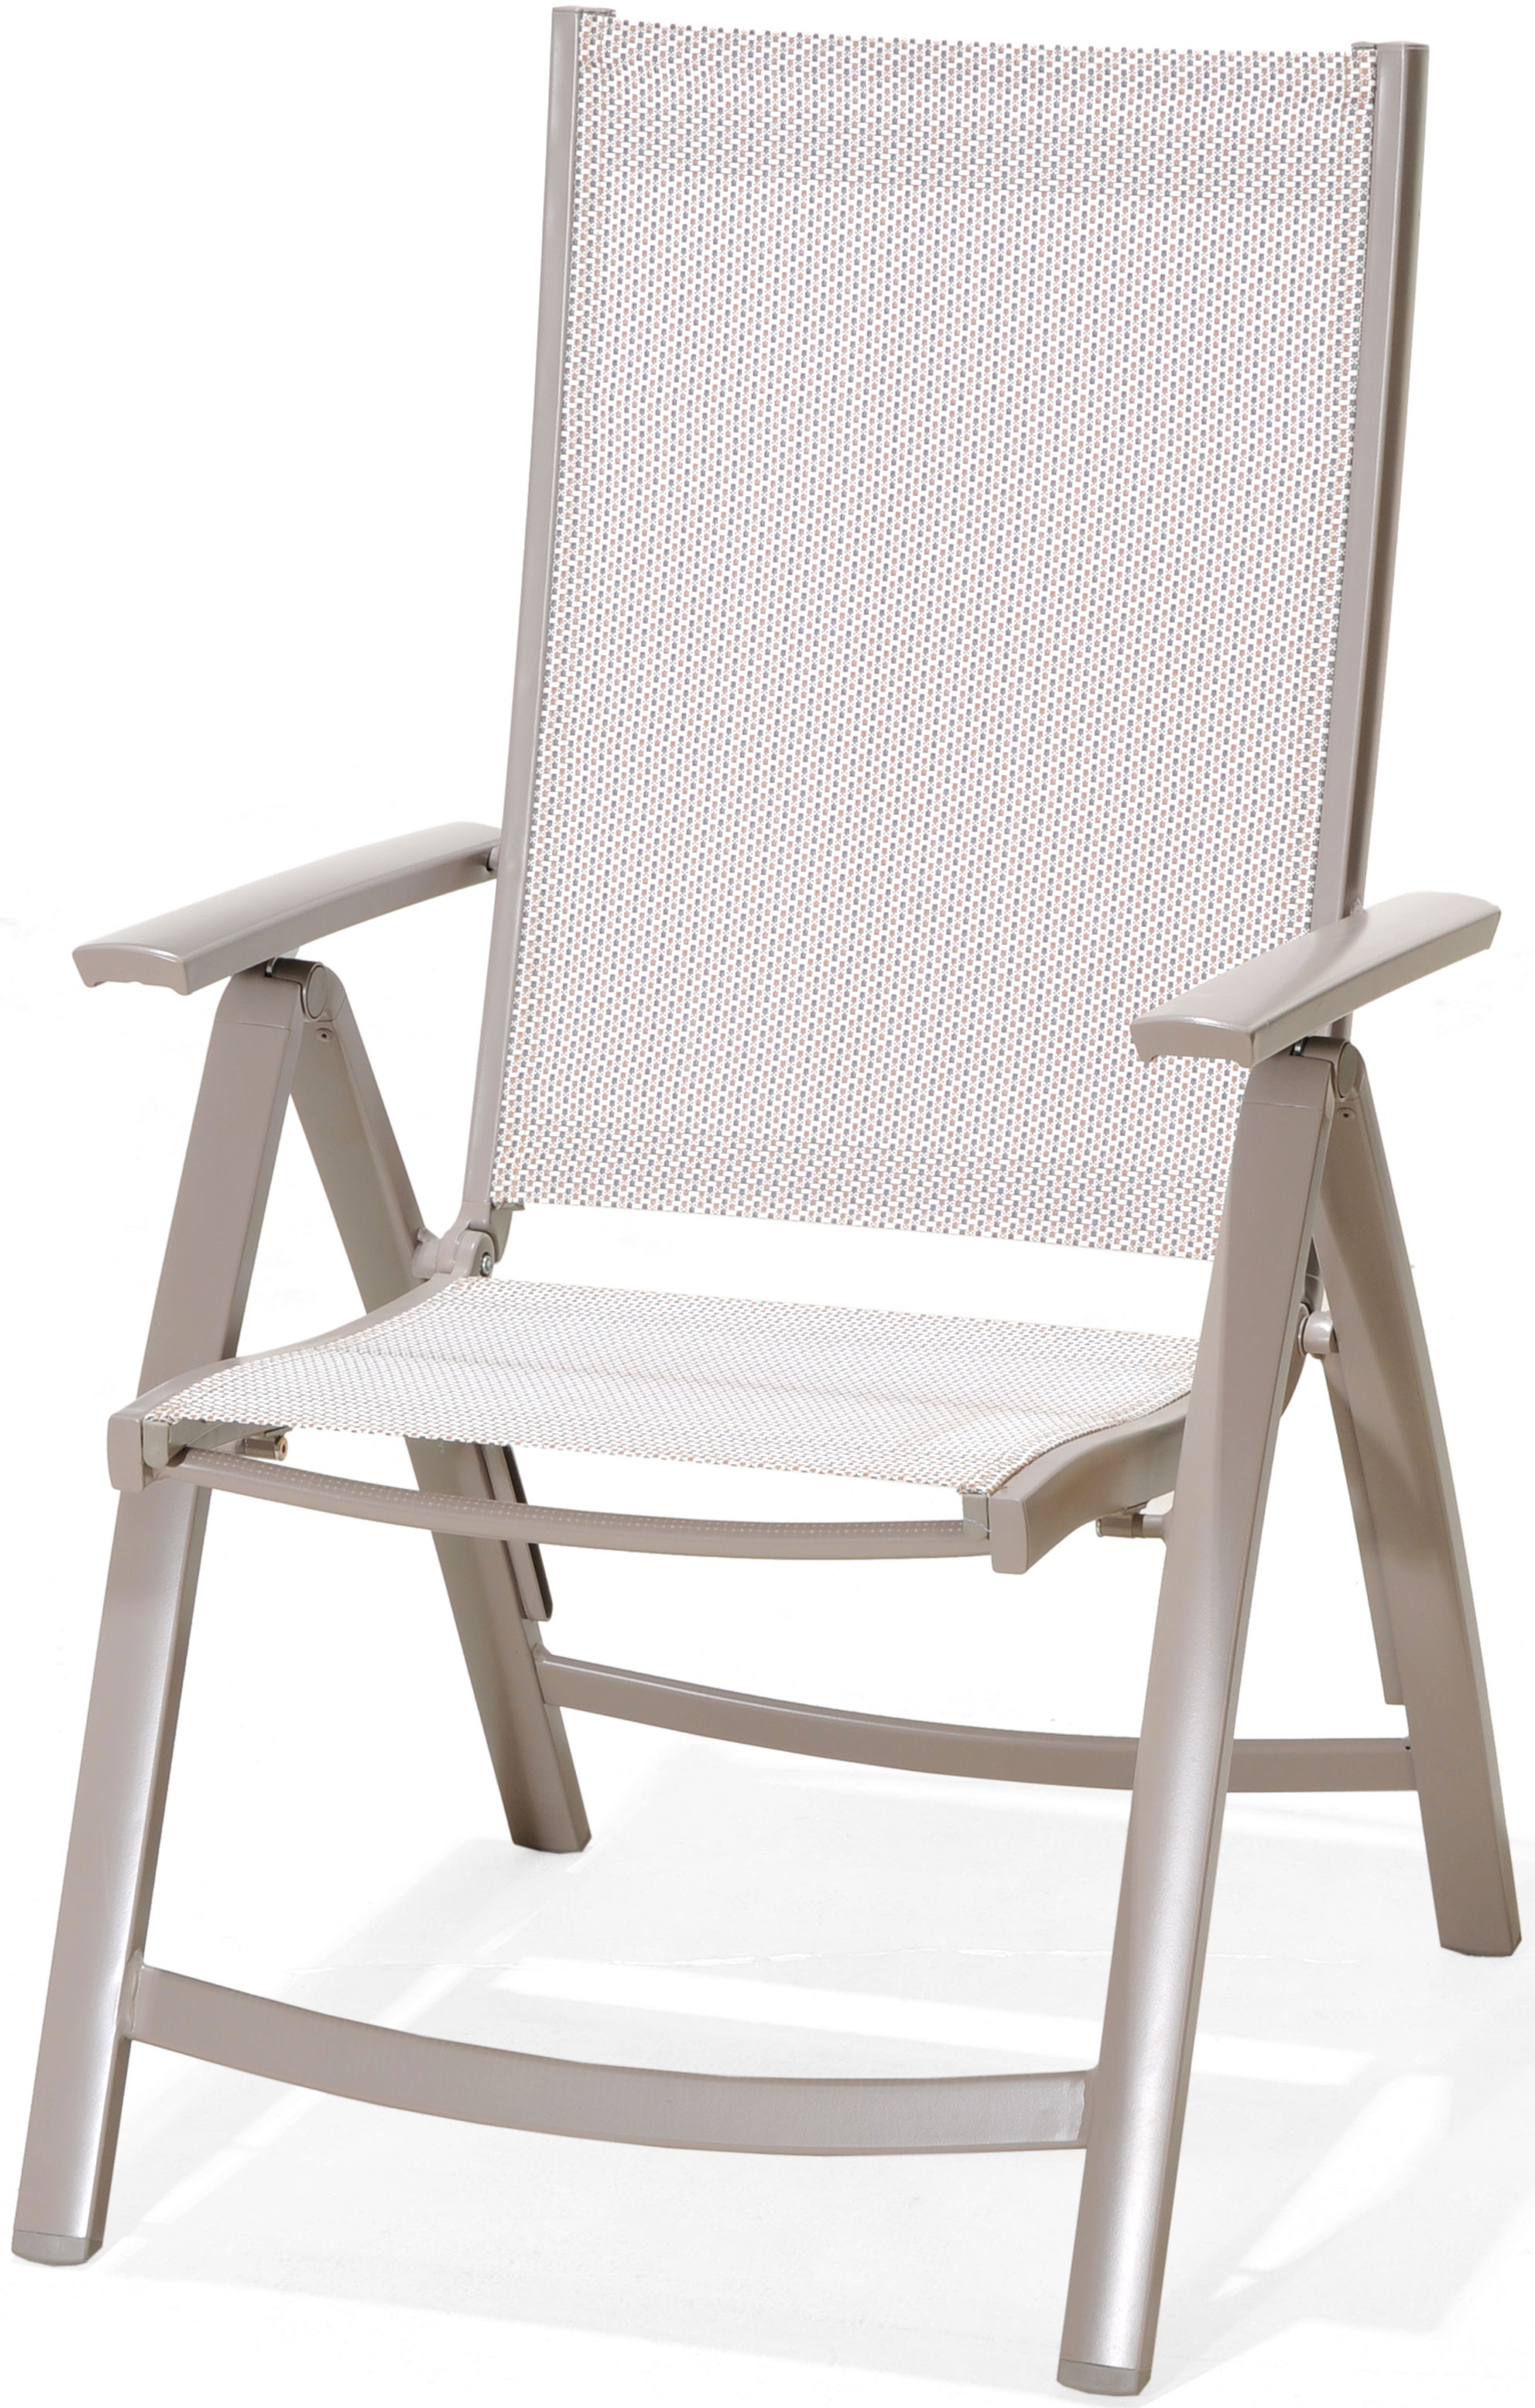 LifestyleGarden Morella Reclining Chair – Lifestyle Garden ...